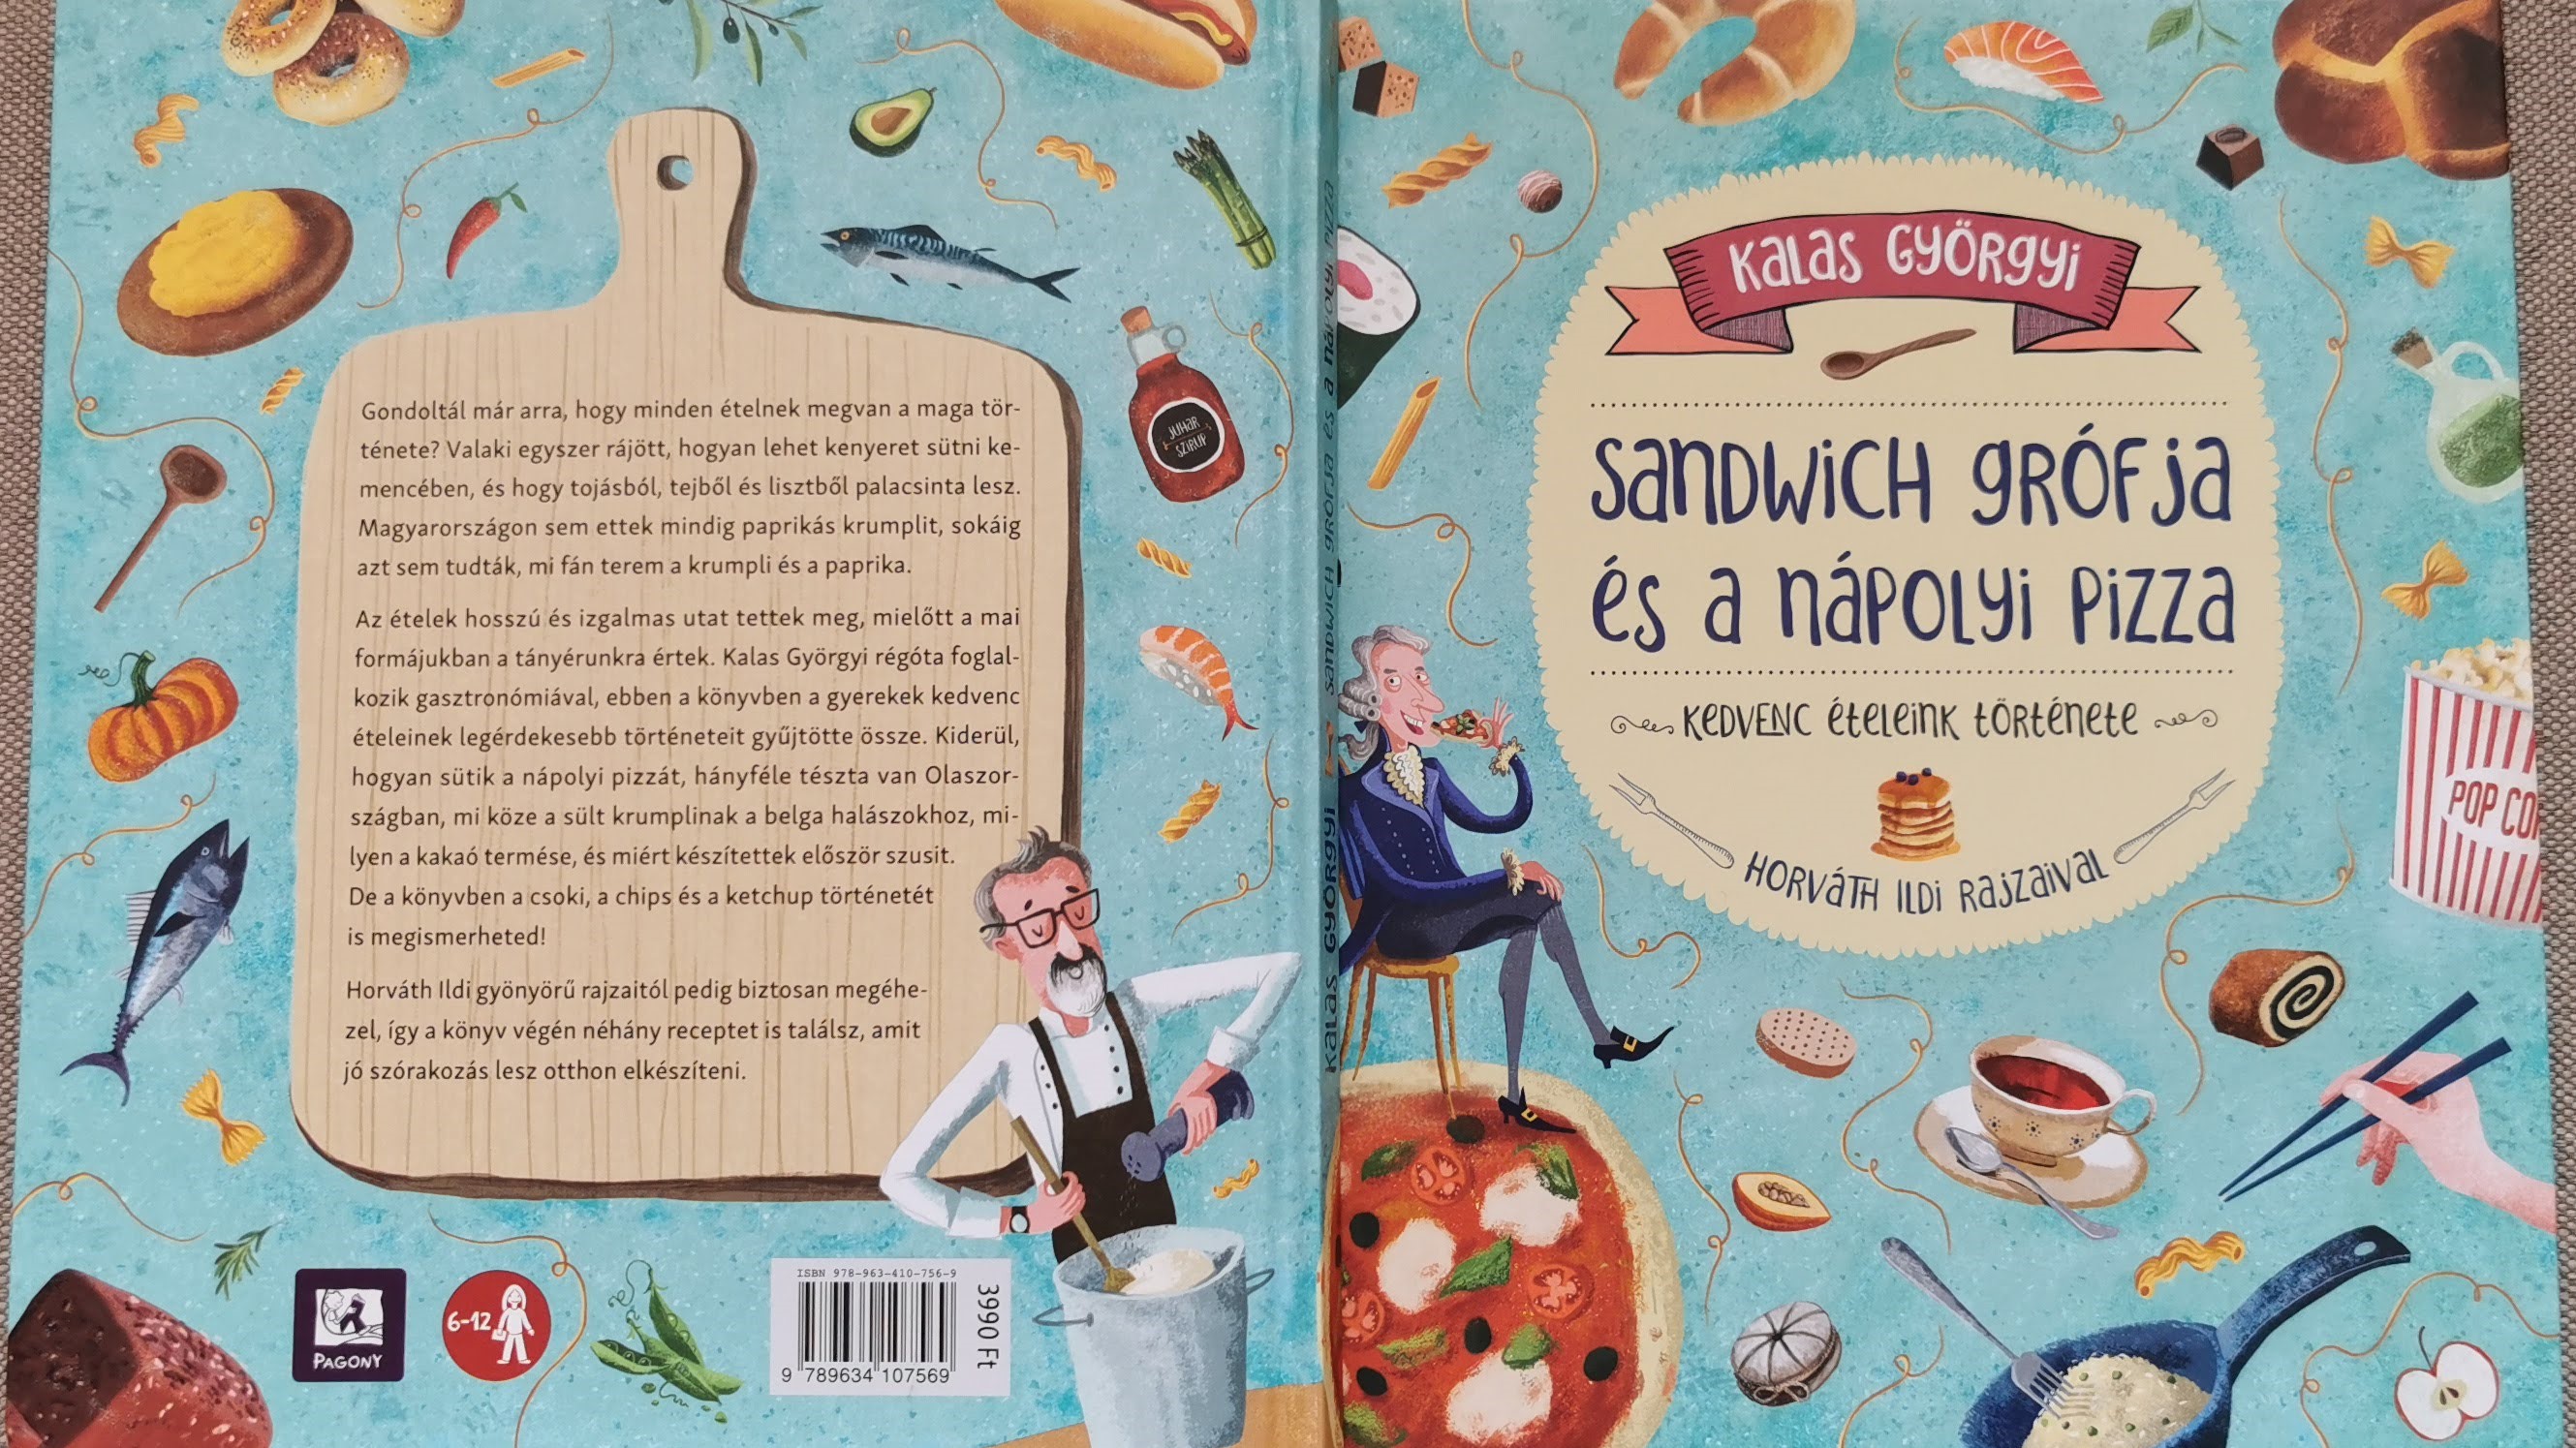 Sandwich grófja és a nápolyi pizza - kedvenc ételeink története